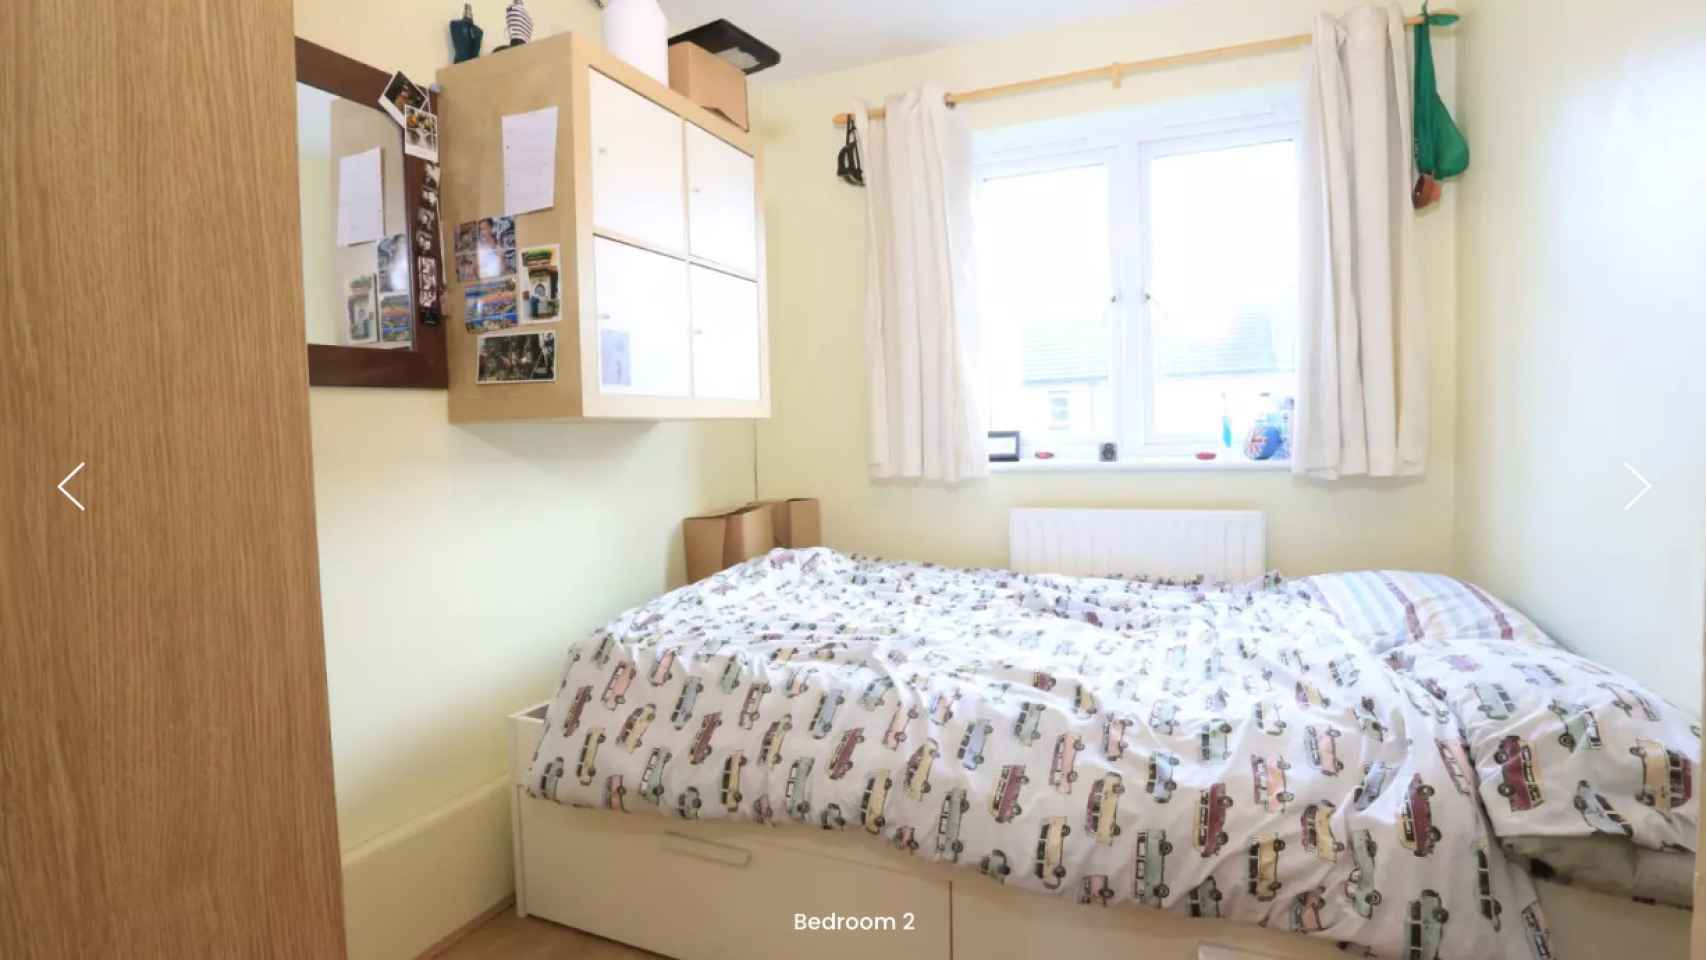 Una habitación en alquiler por 1.136 euros mensuales en el barrio londinense de Tower Hamlets